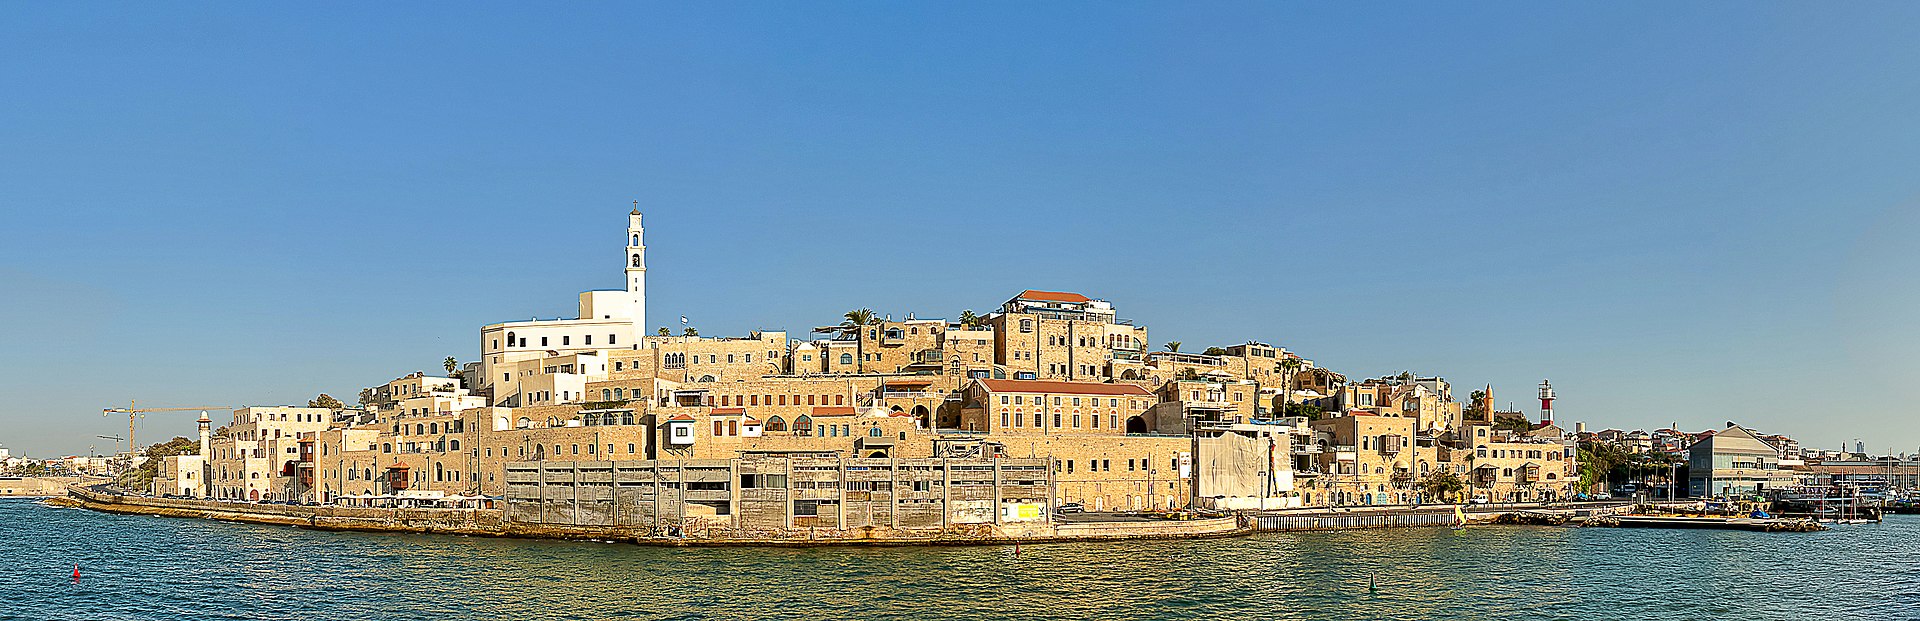 Old Jaffa Tel Aviv Israel image